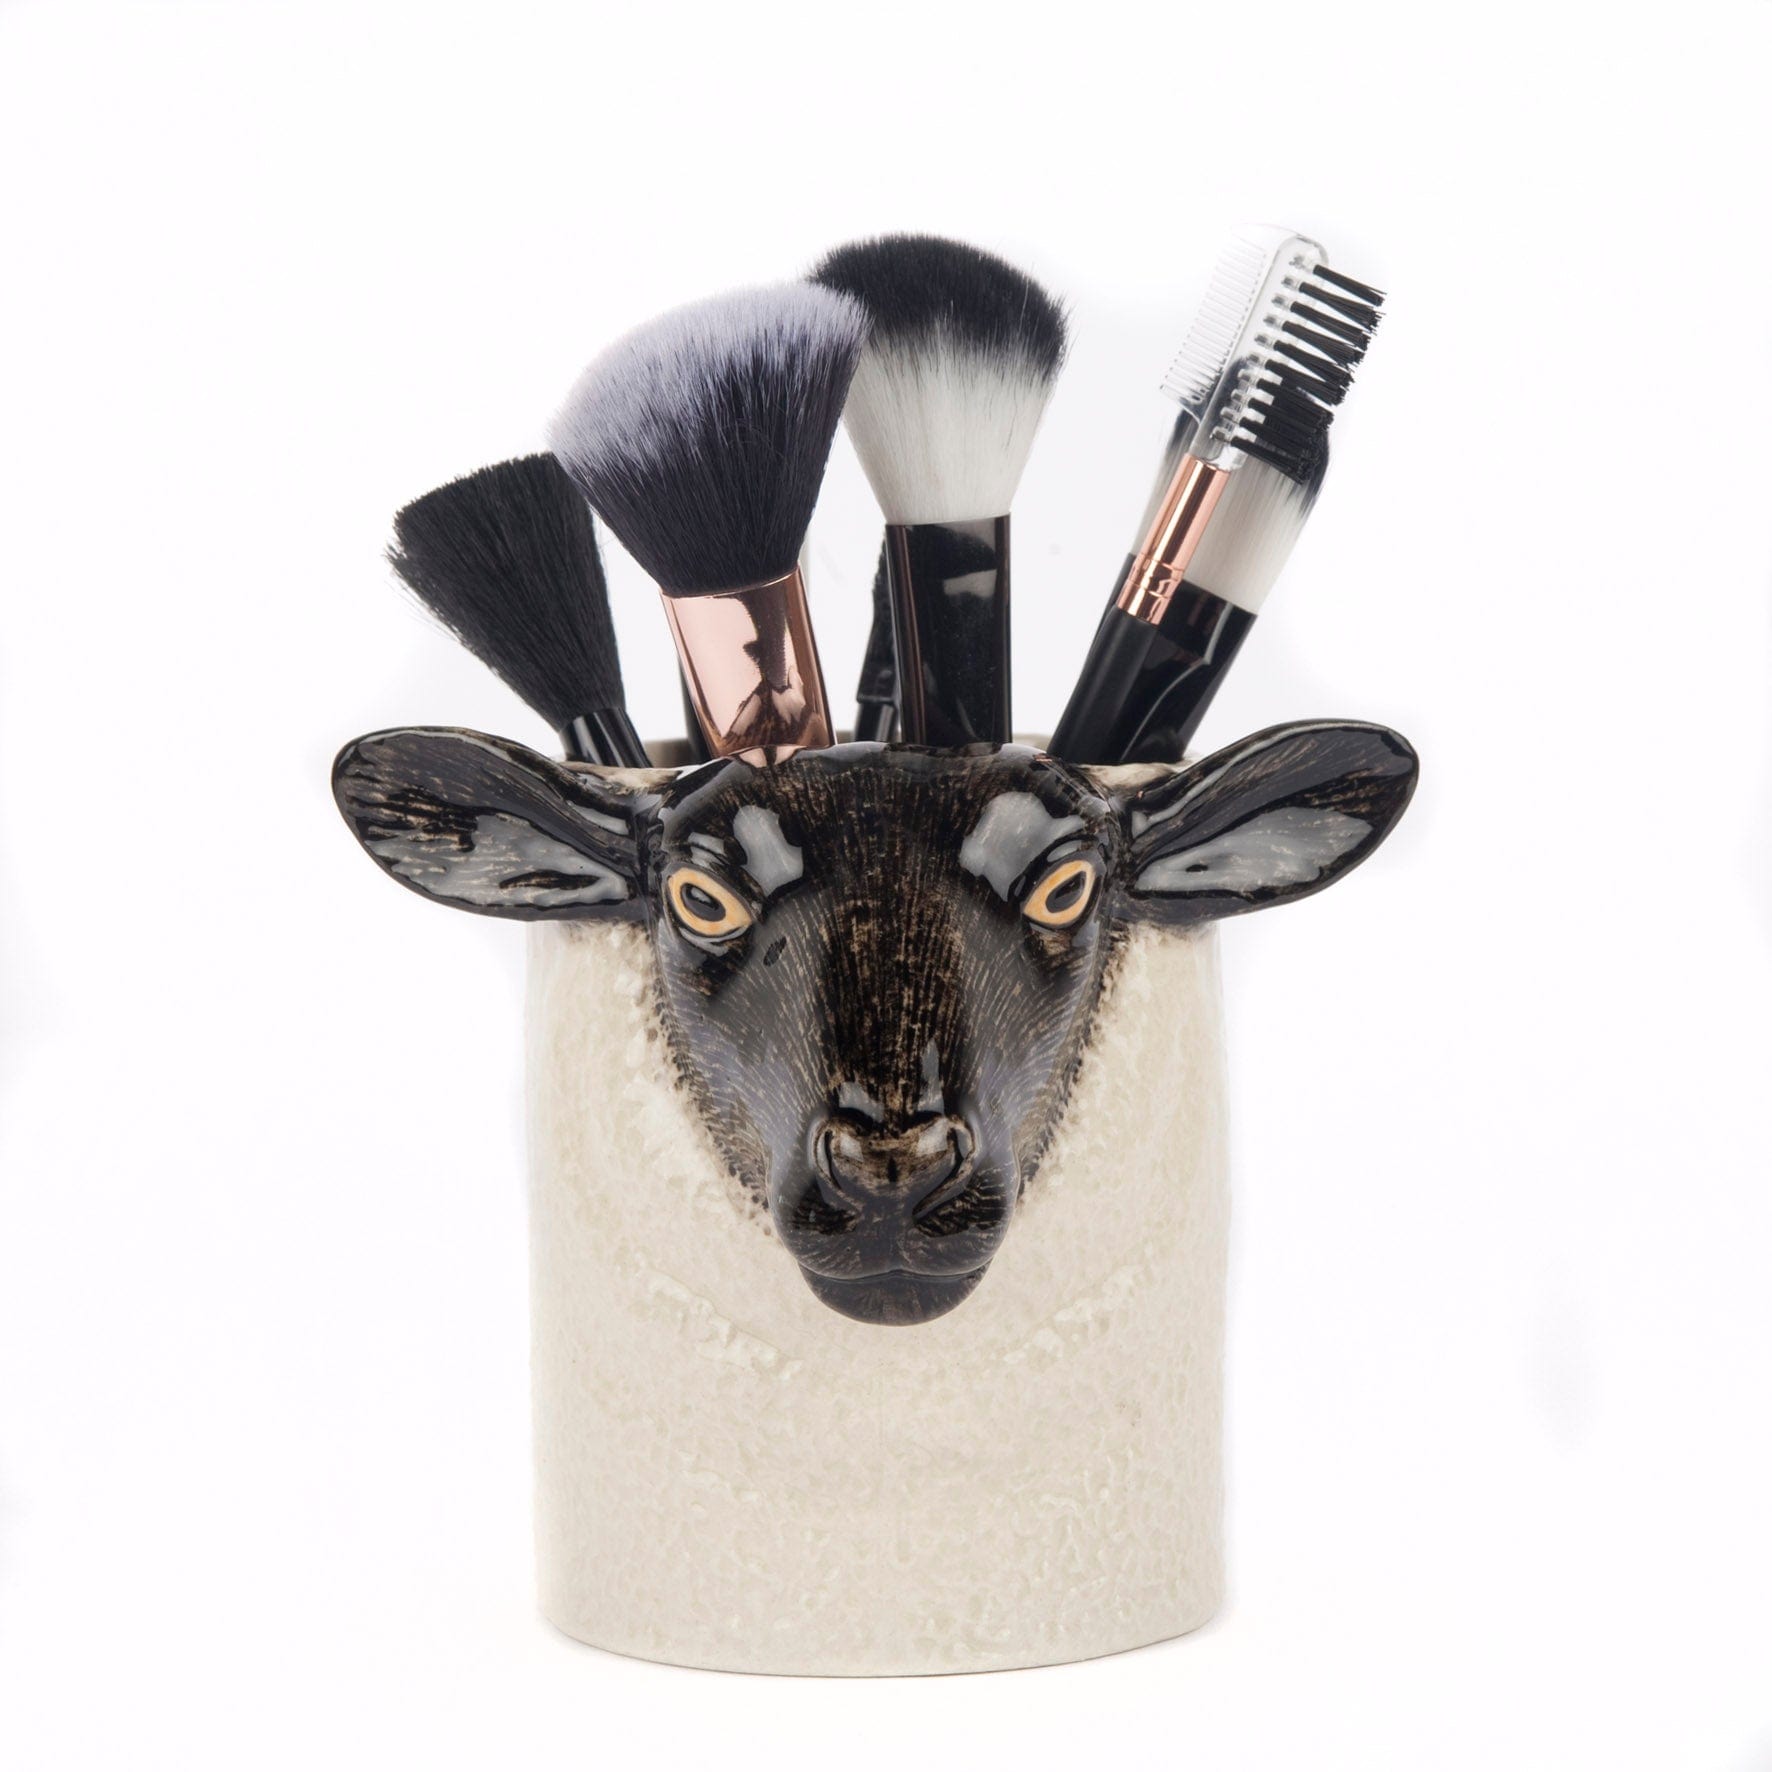 Black Faced Suffolk Sheep Pencil Pot